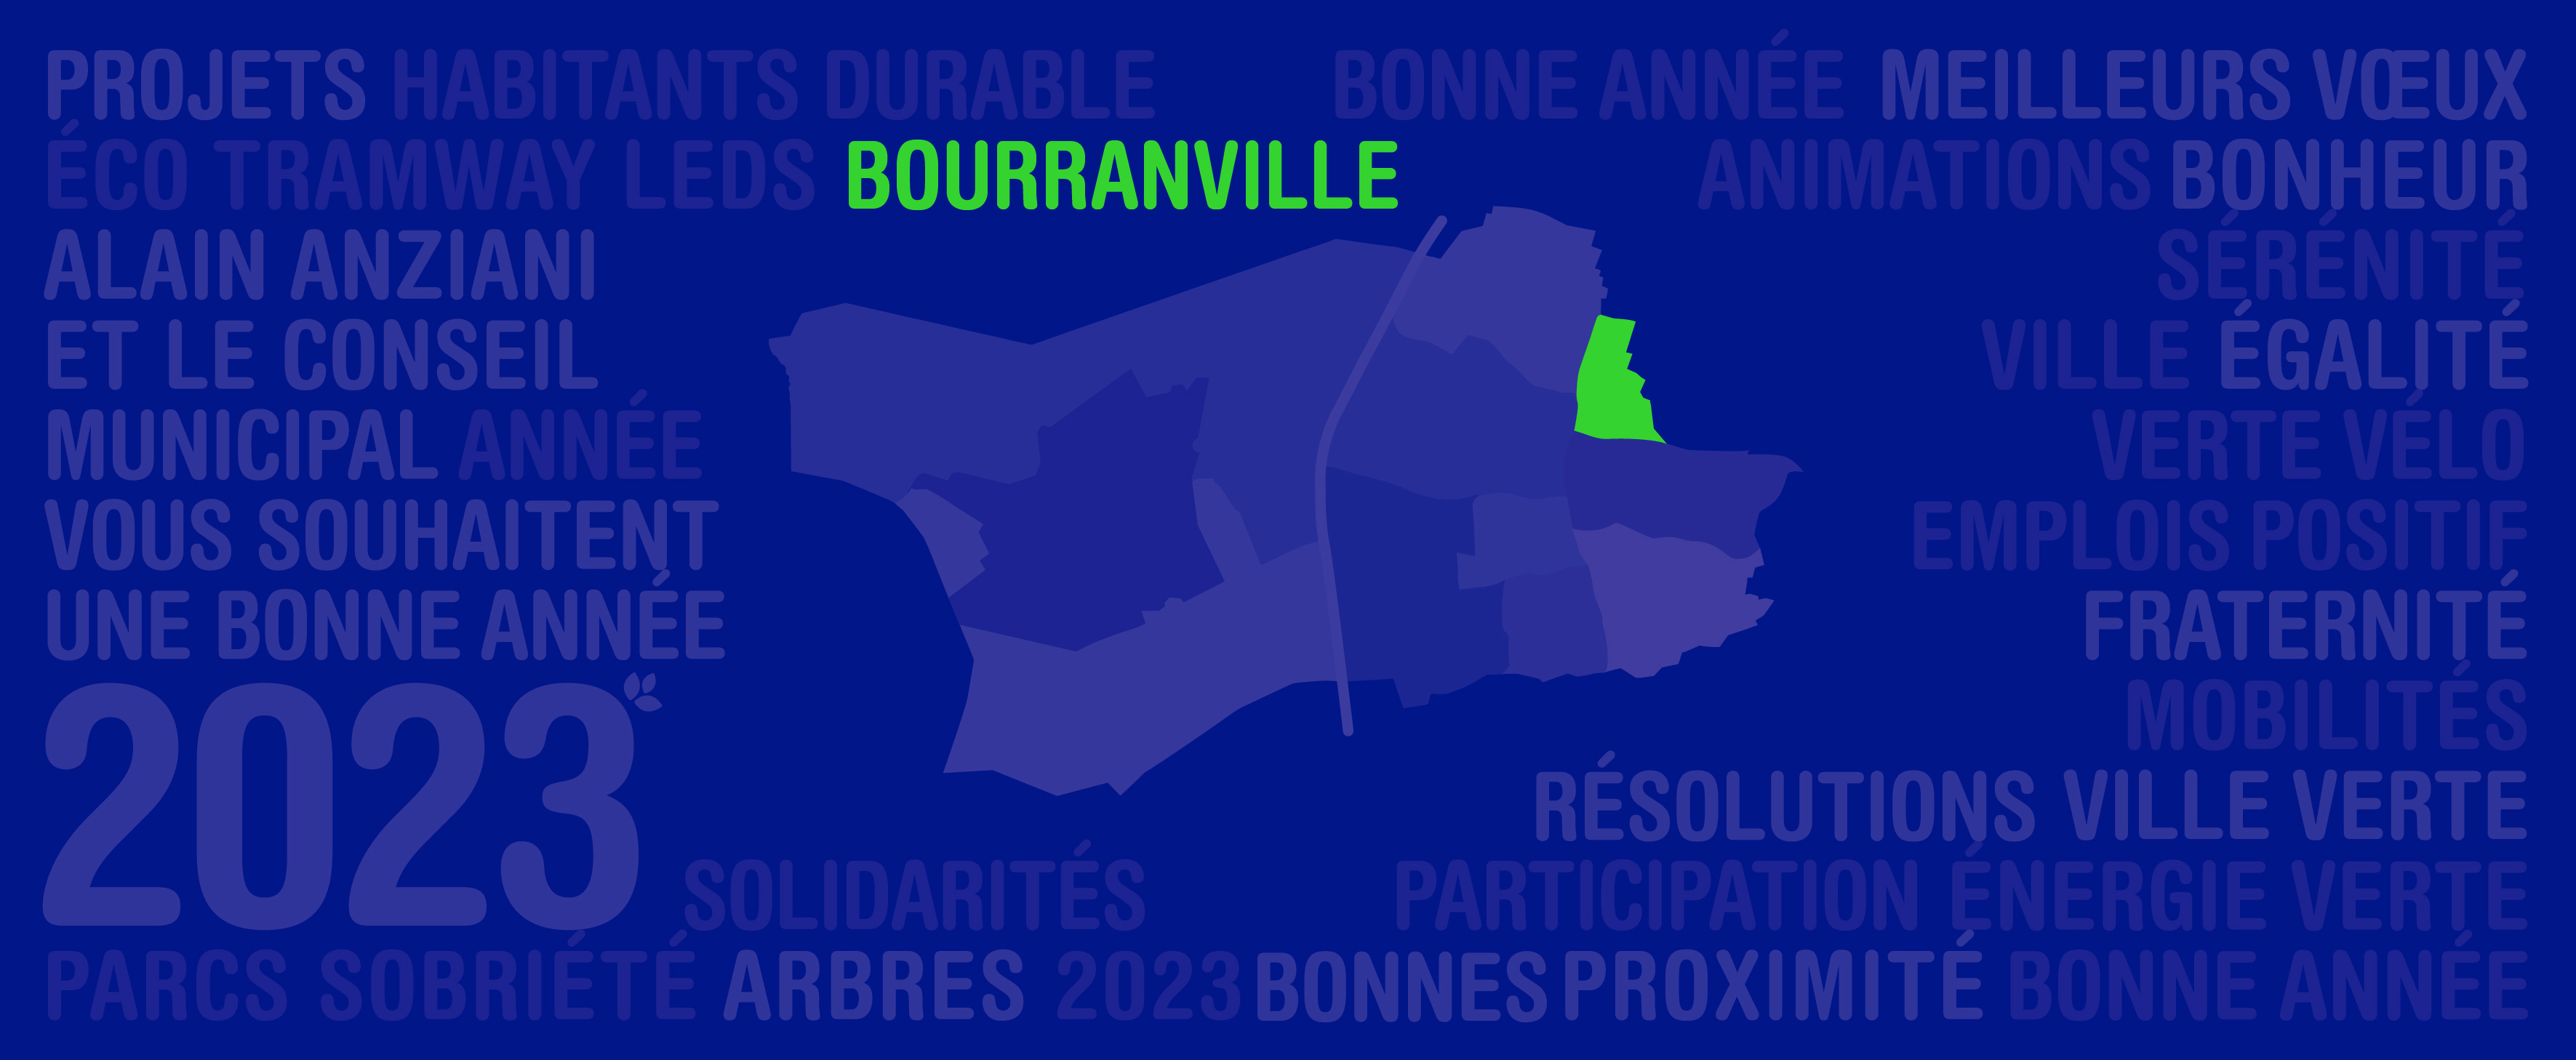 Les vœux aux habitants de Bourranville 